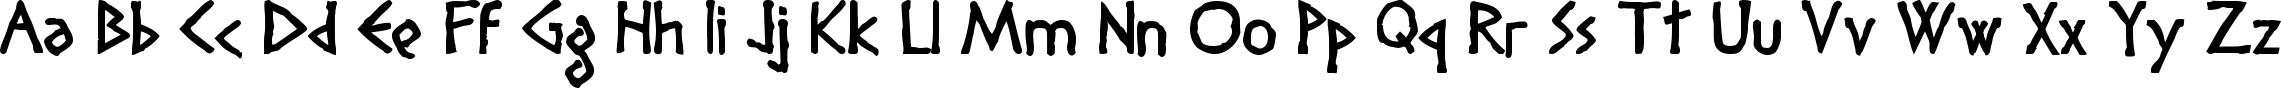 Пример написания английского алфавита шрифтом Diogenes